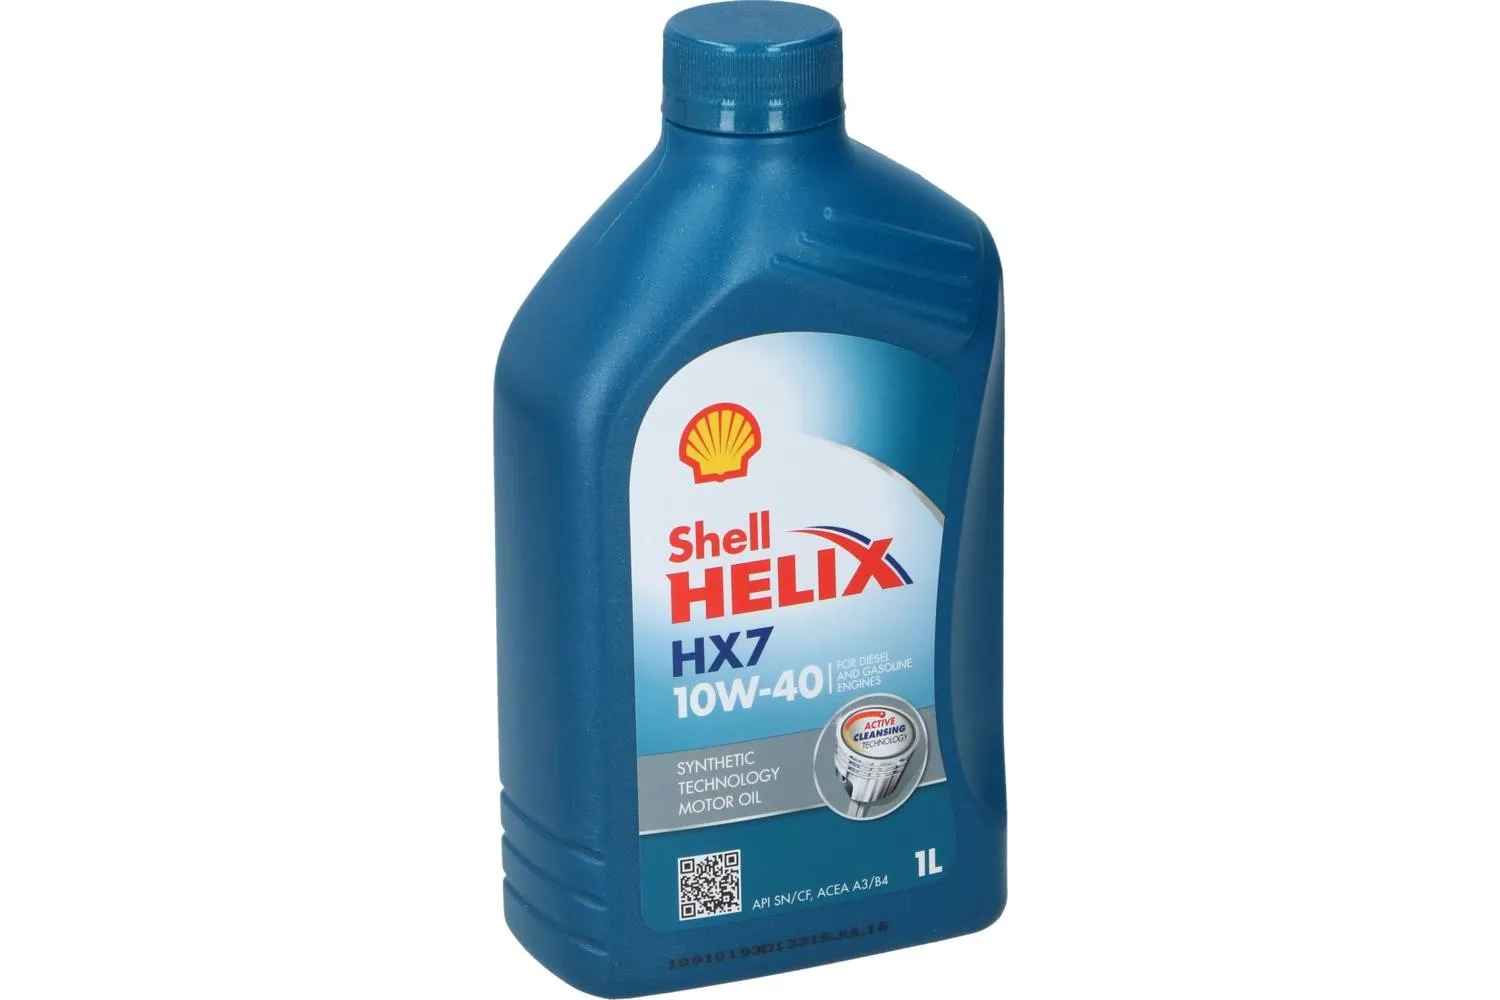 Shell Helix HX7 10w40#5